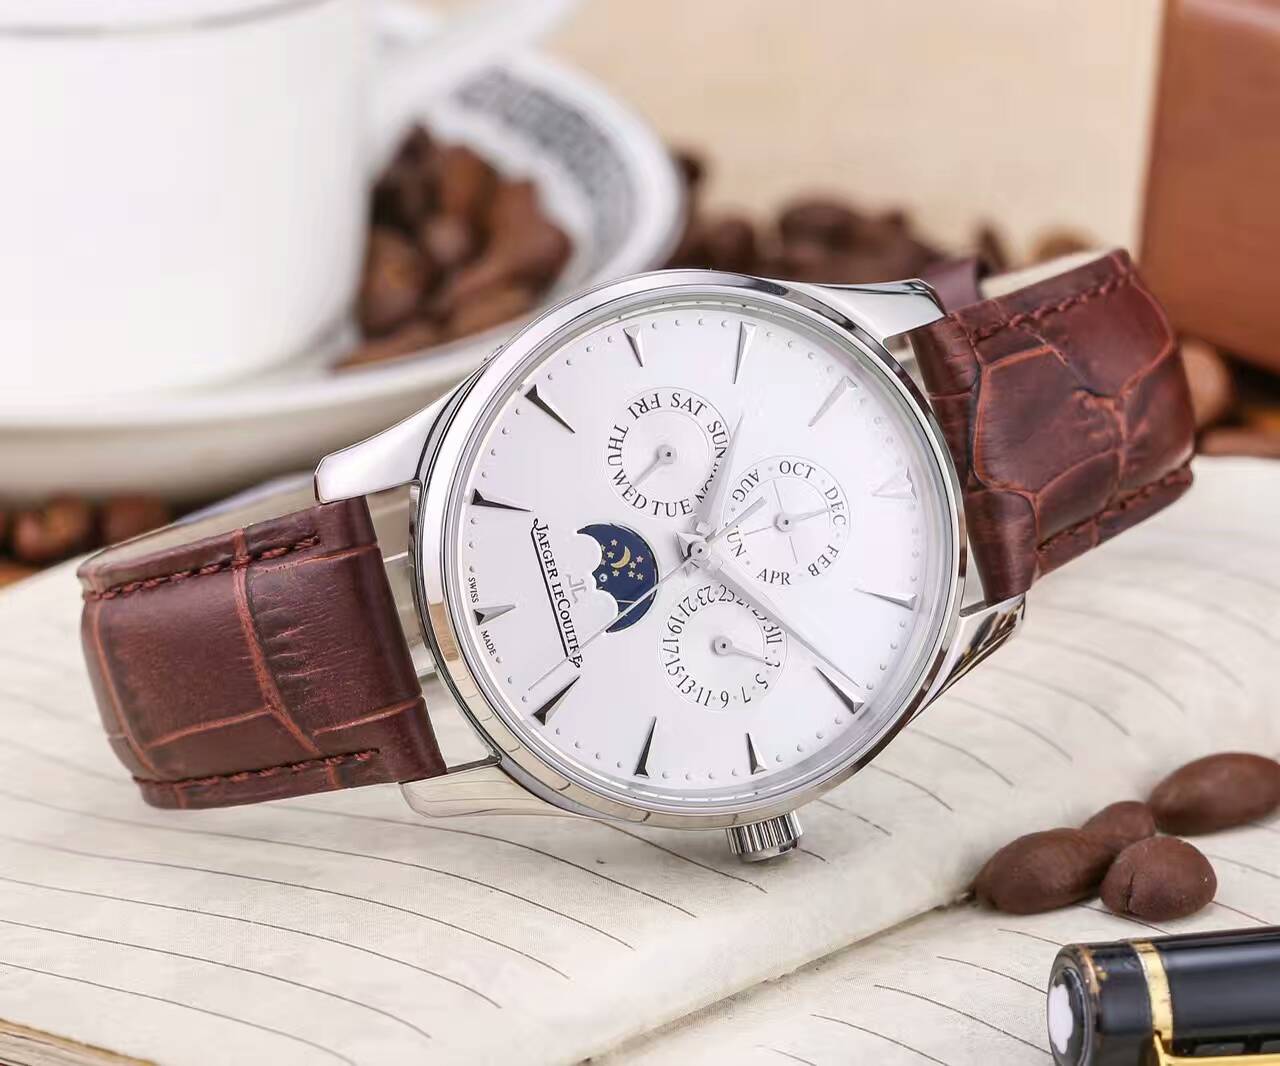 積家 頂級機械機芯 真牛皮錶帶 精湛品質 尊貴高雅 精品男士腕錶-rhid-116840